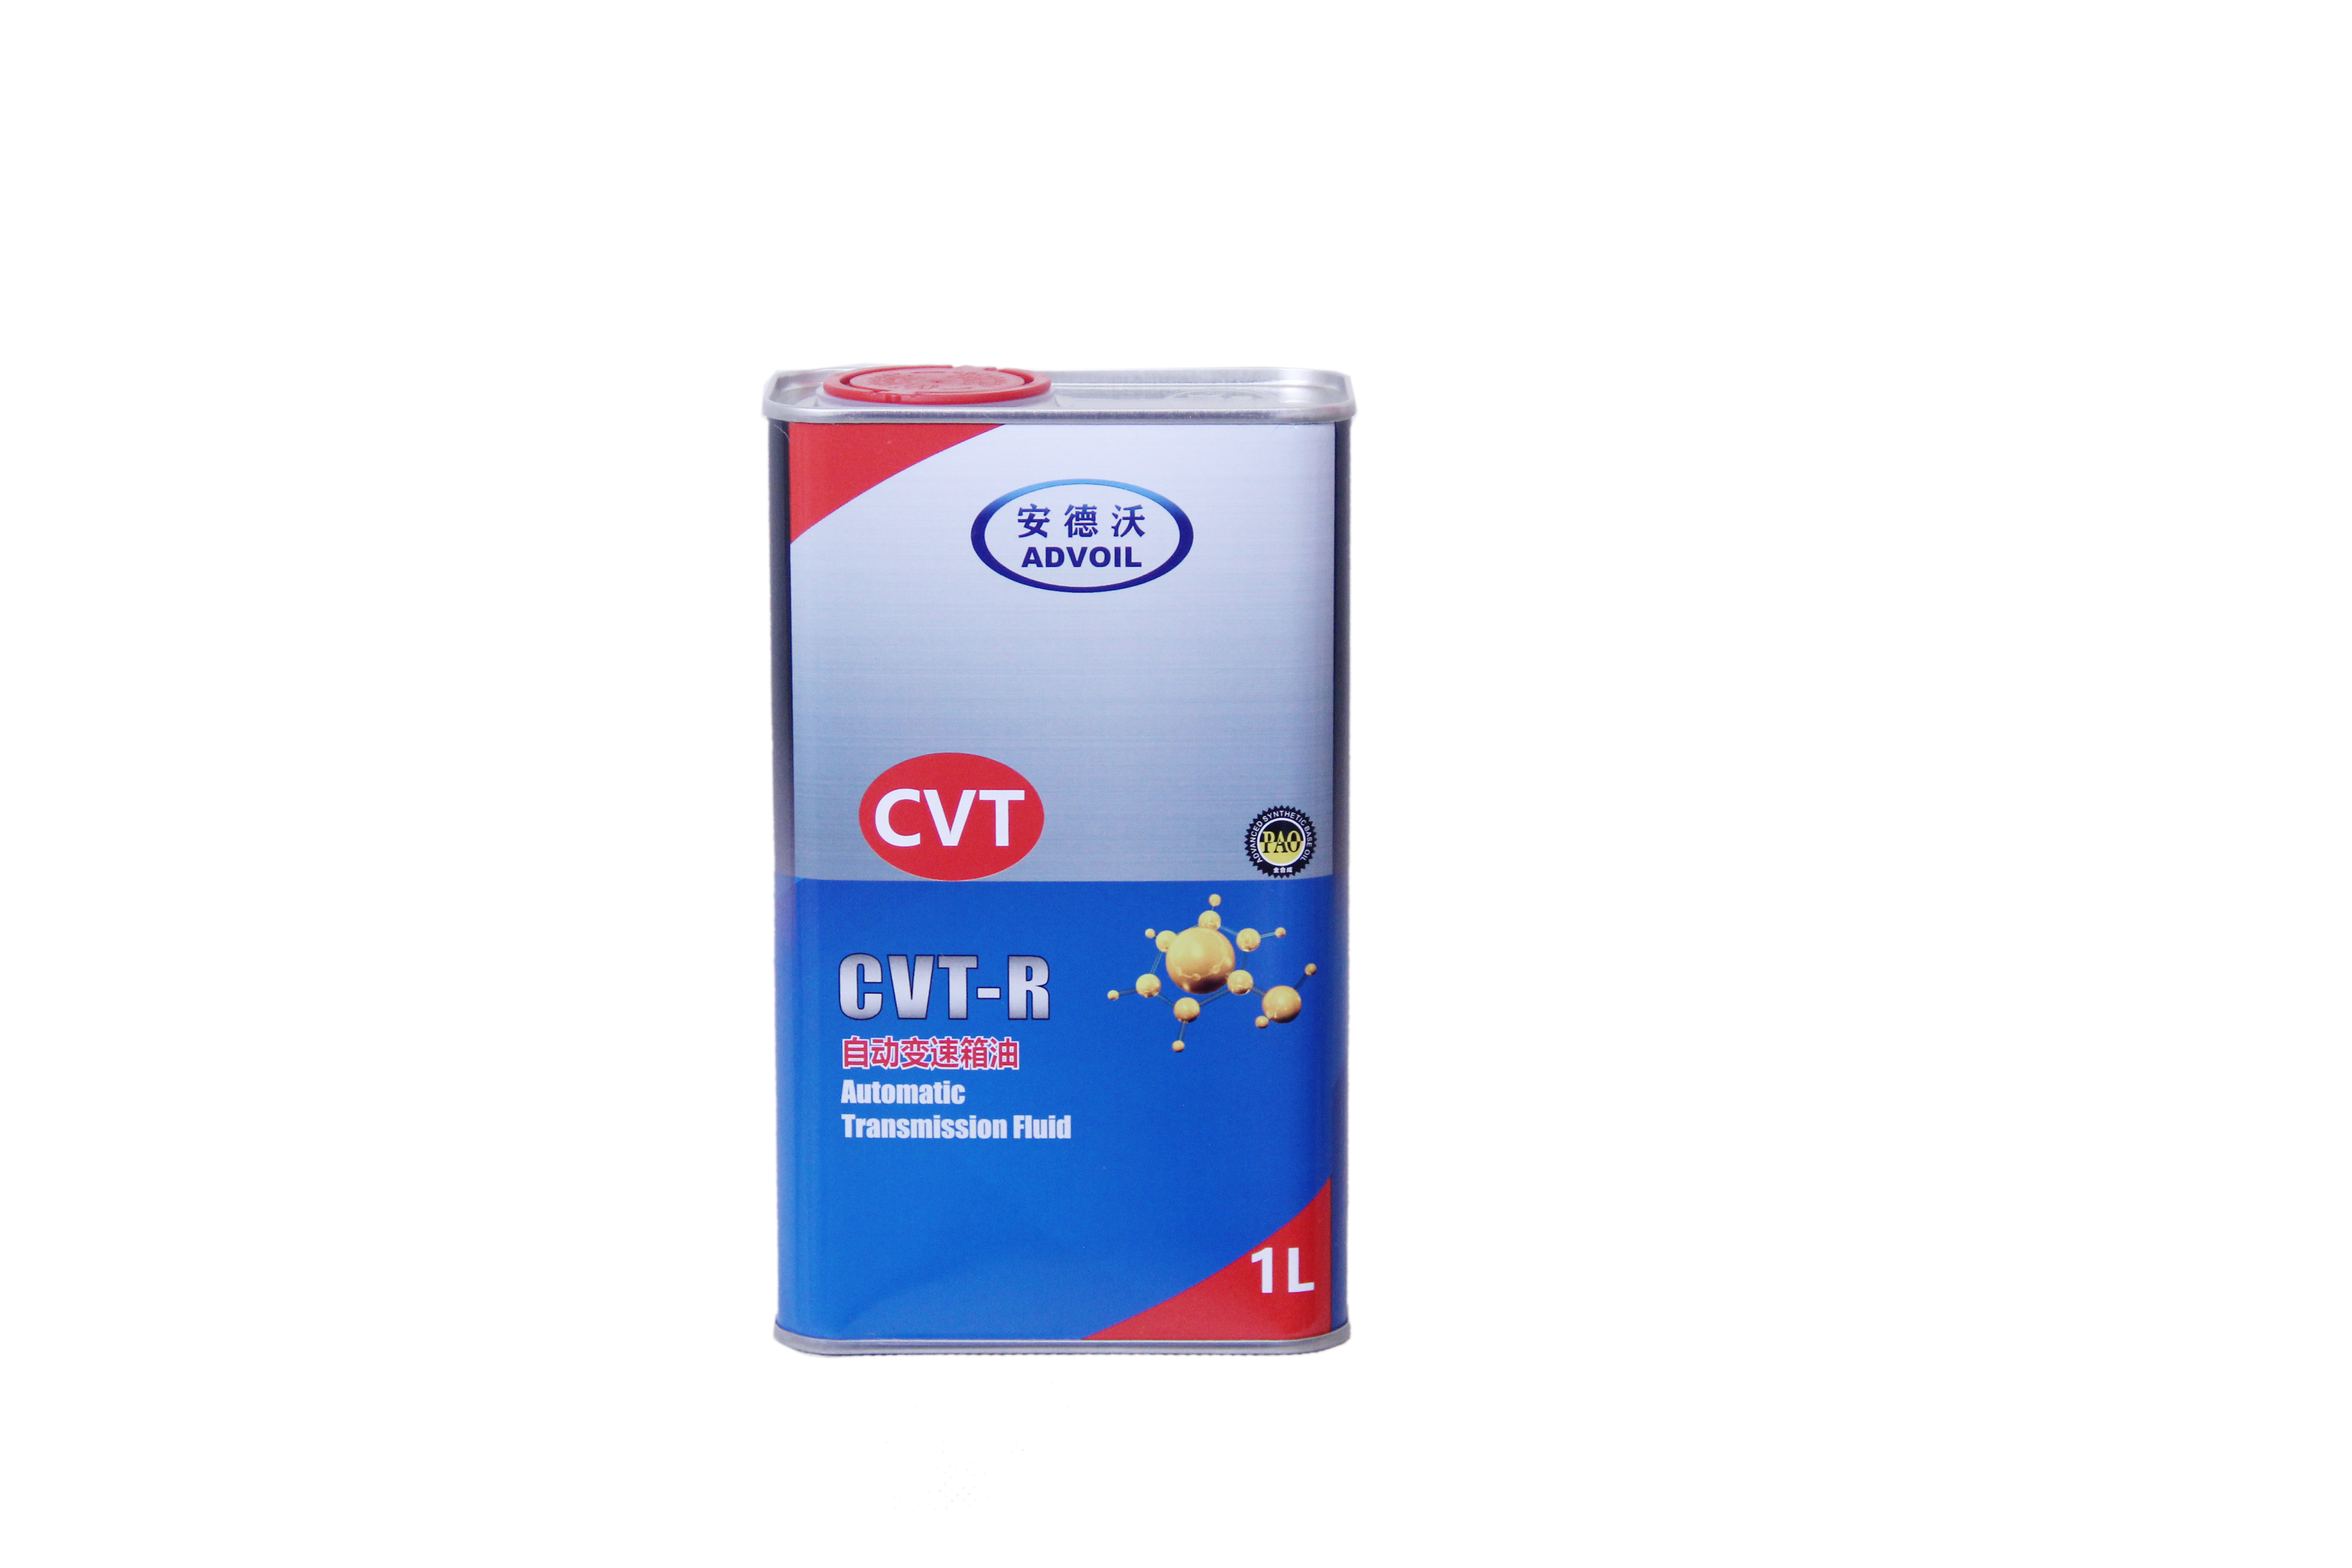 CVT-R